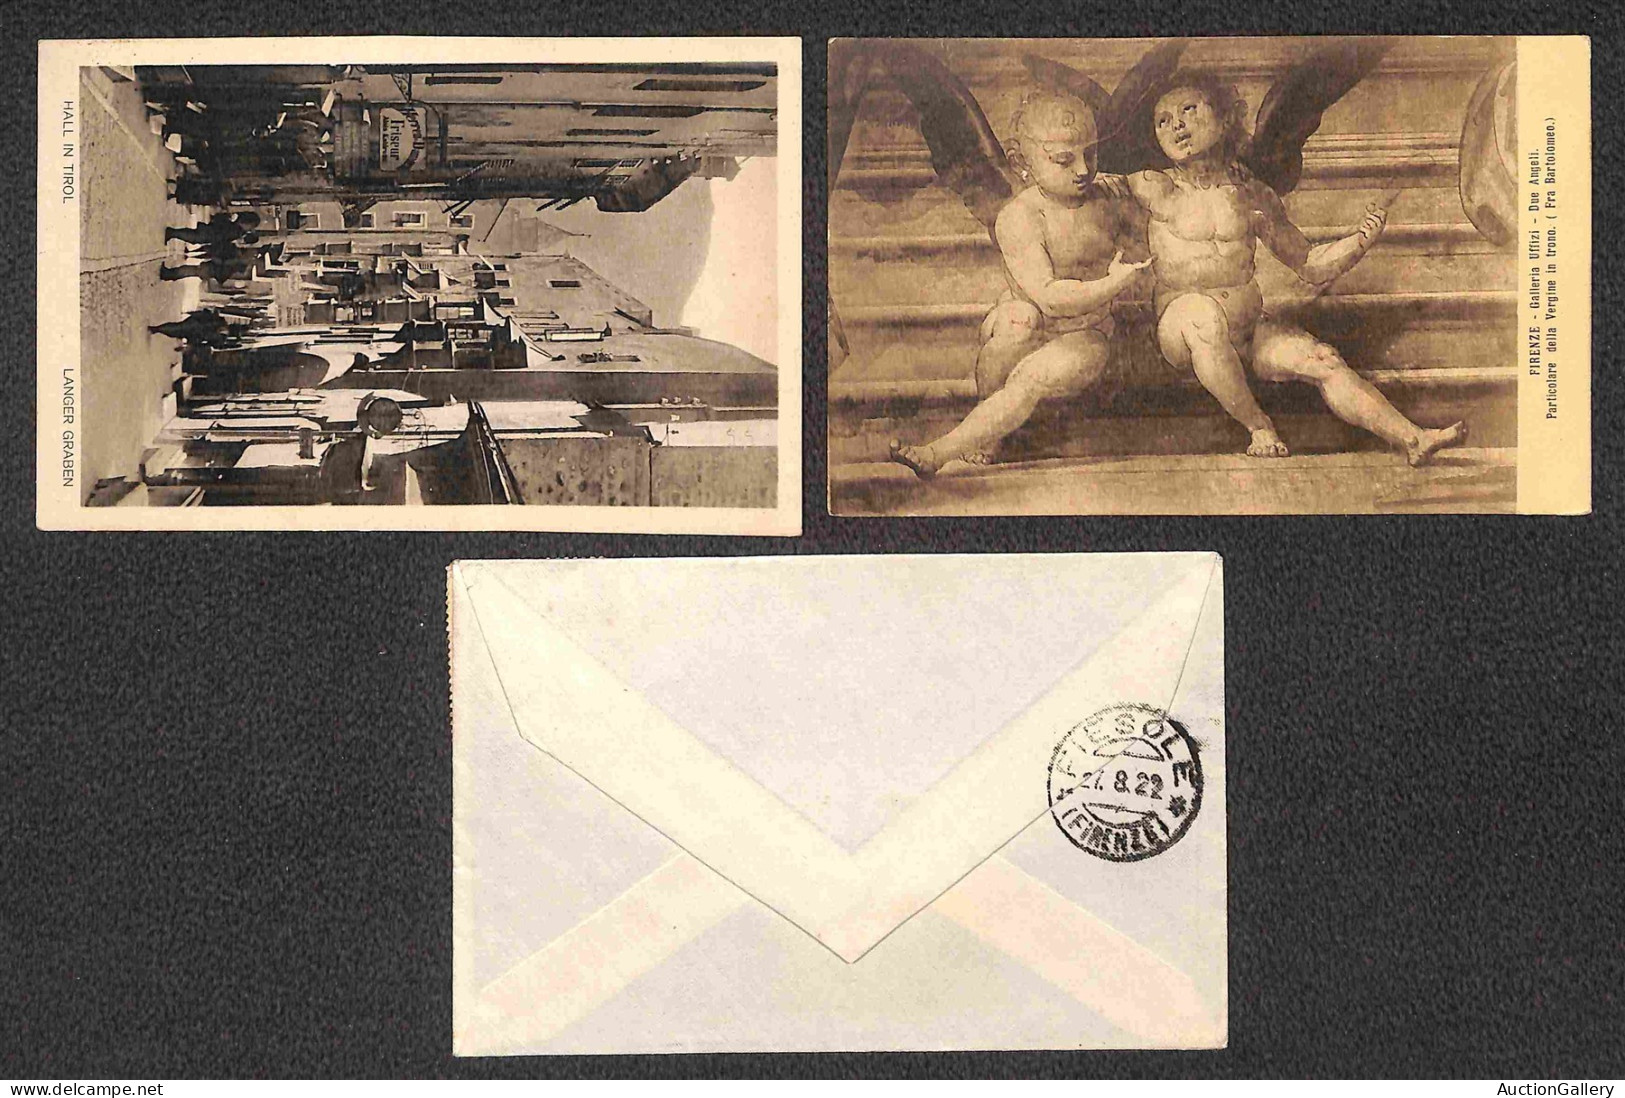 Europa - Austria - 1920/1936 - Cinque buste + otto cartoline con affrancature del periodo